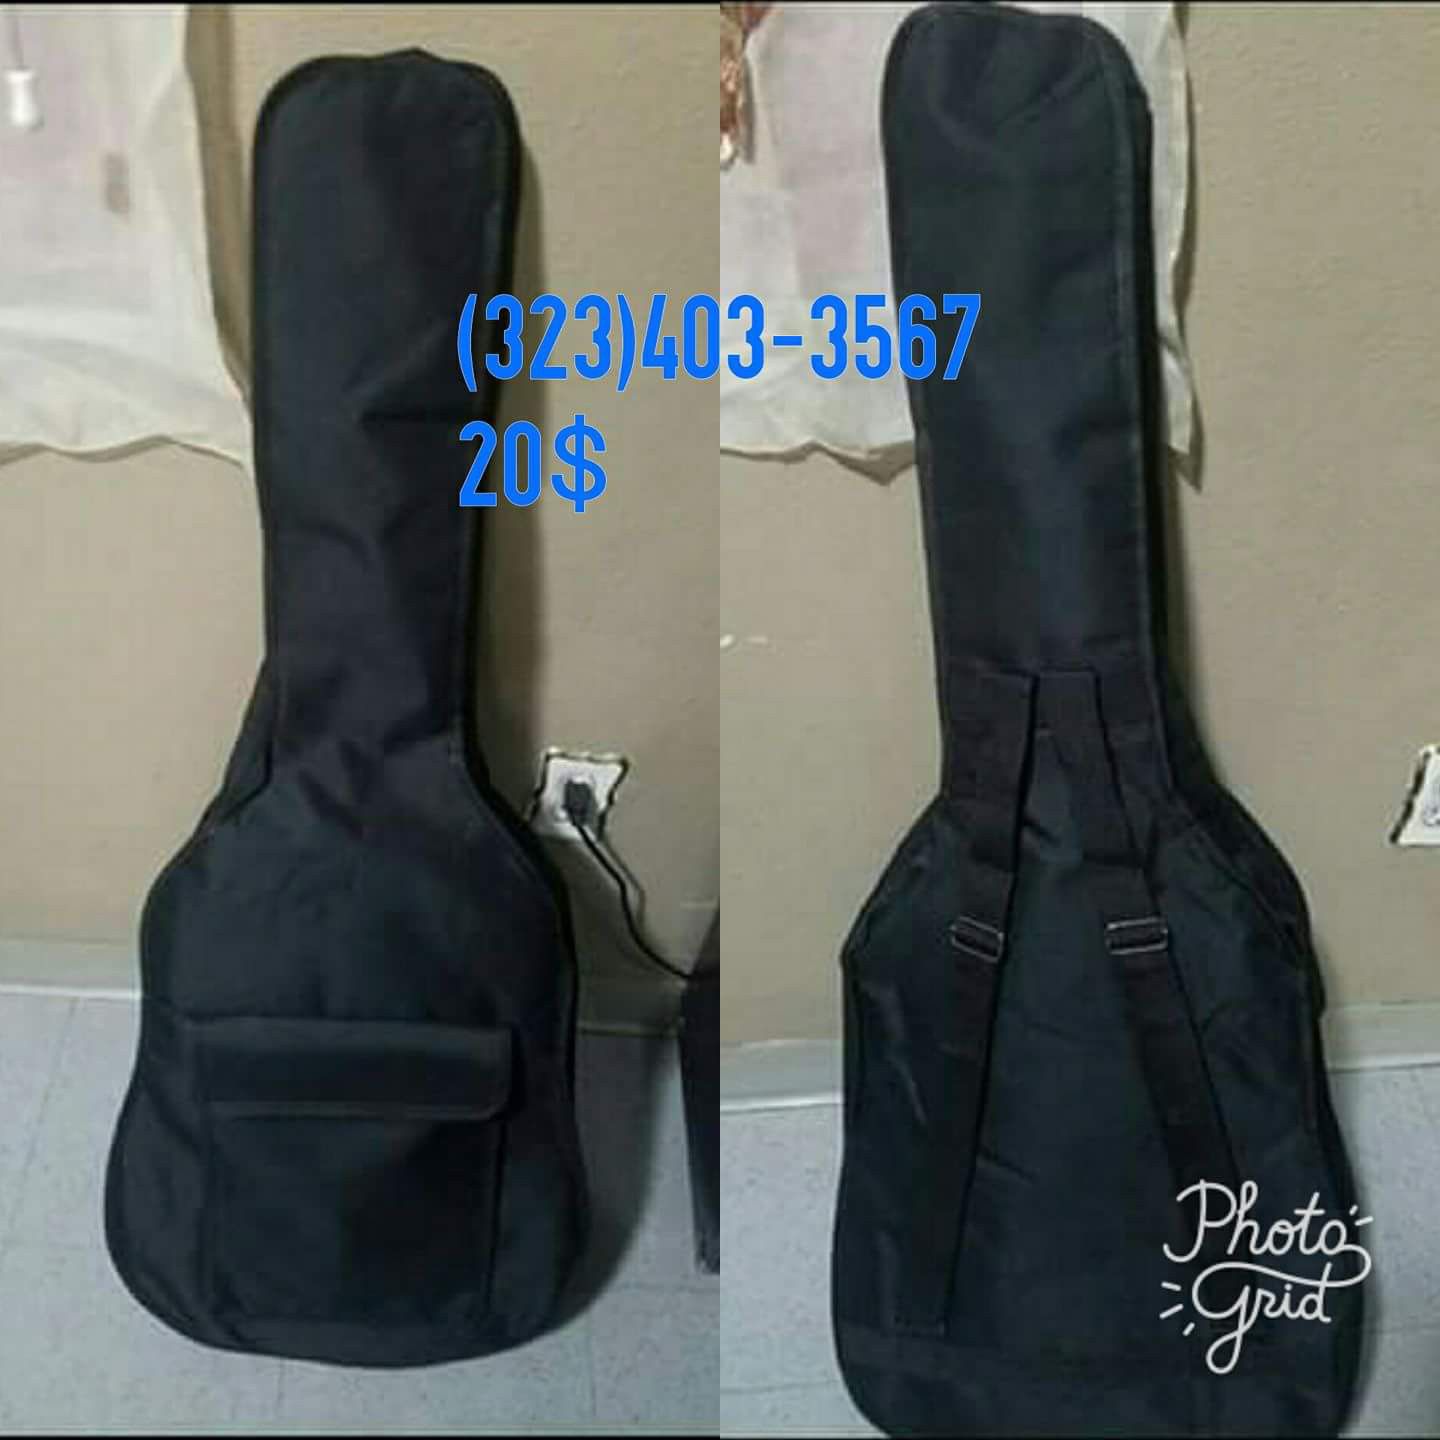 New guitar bag